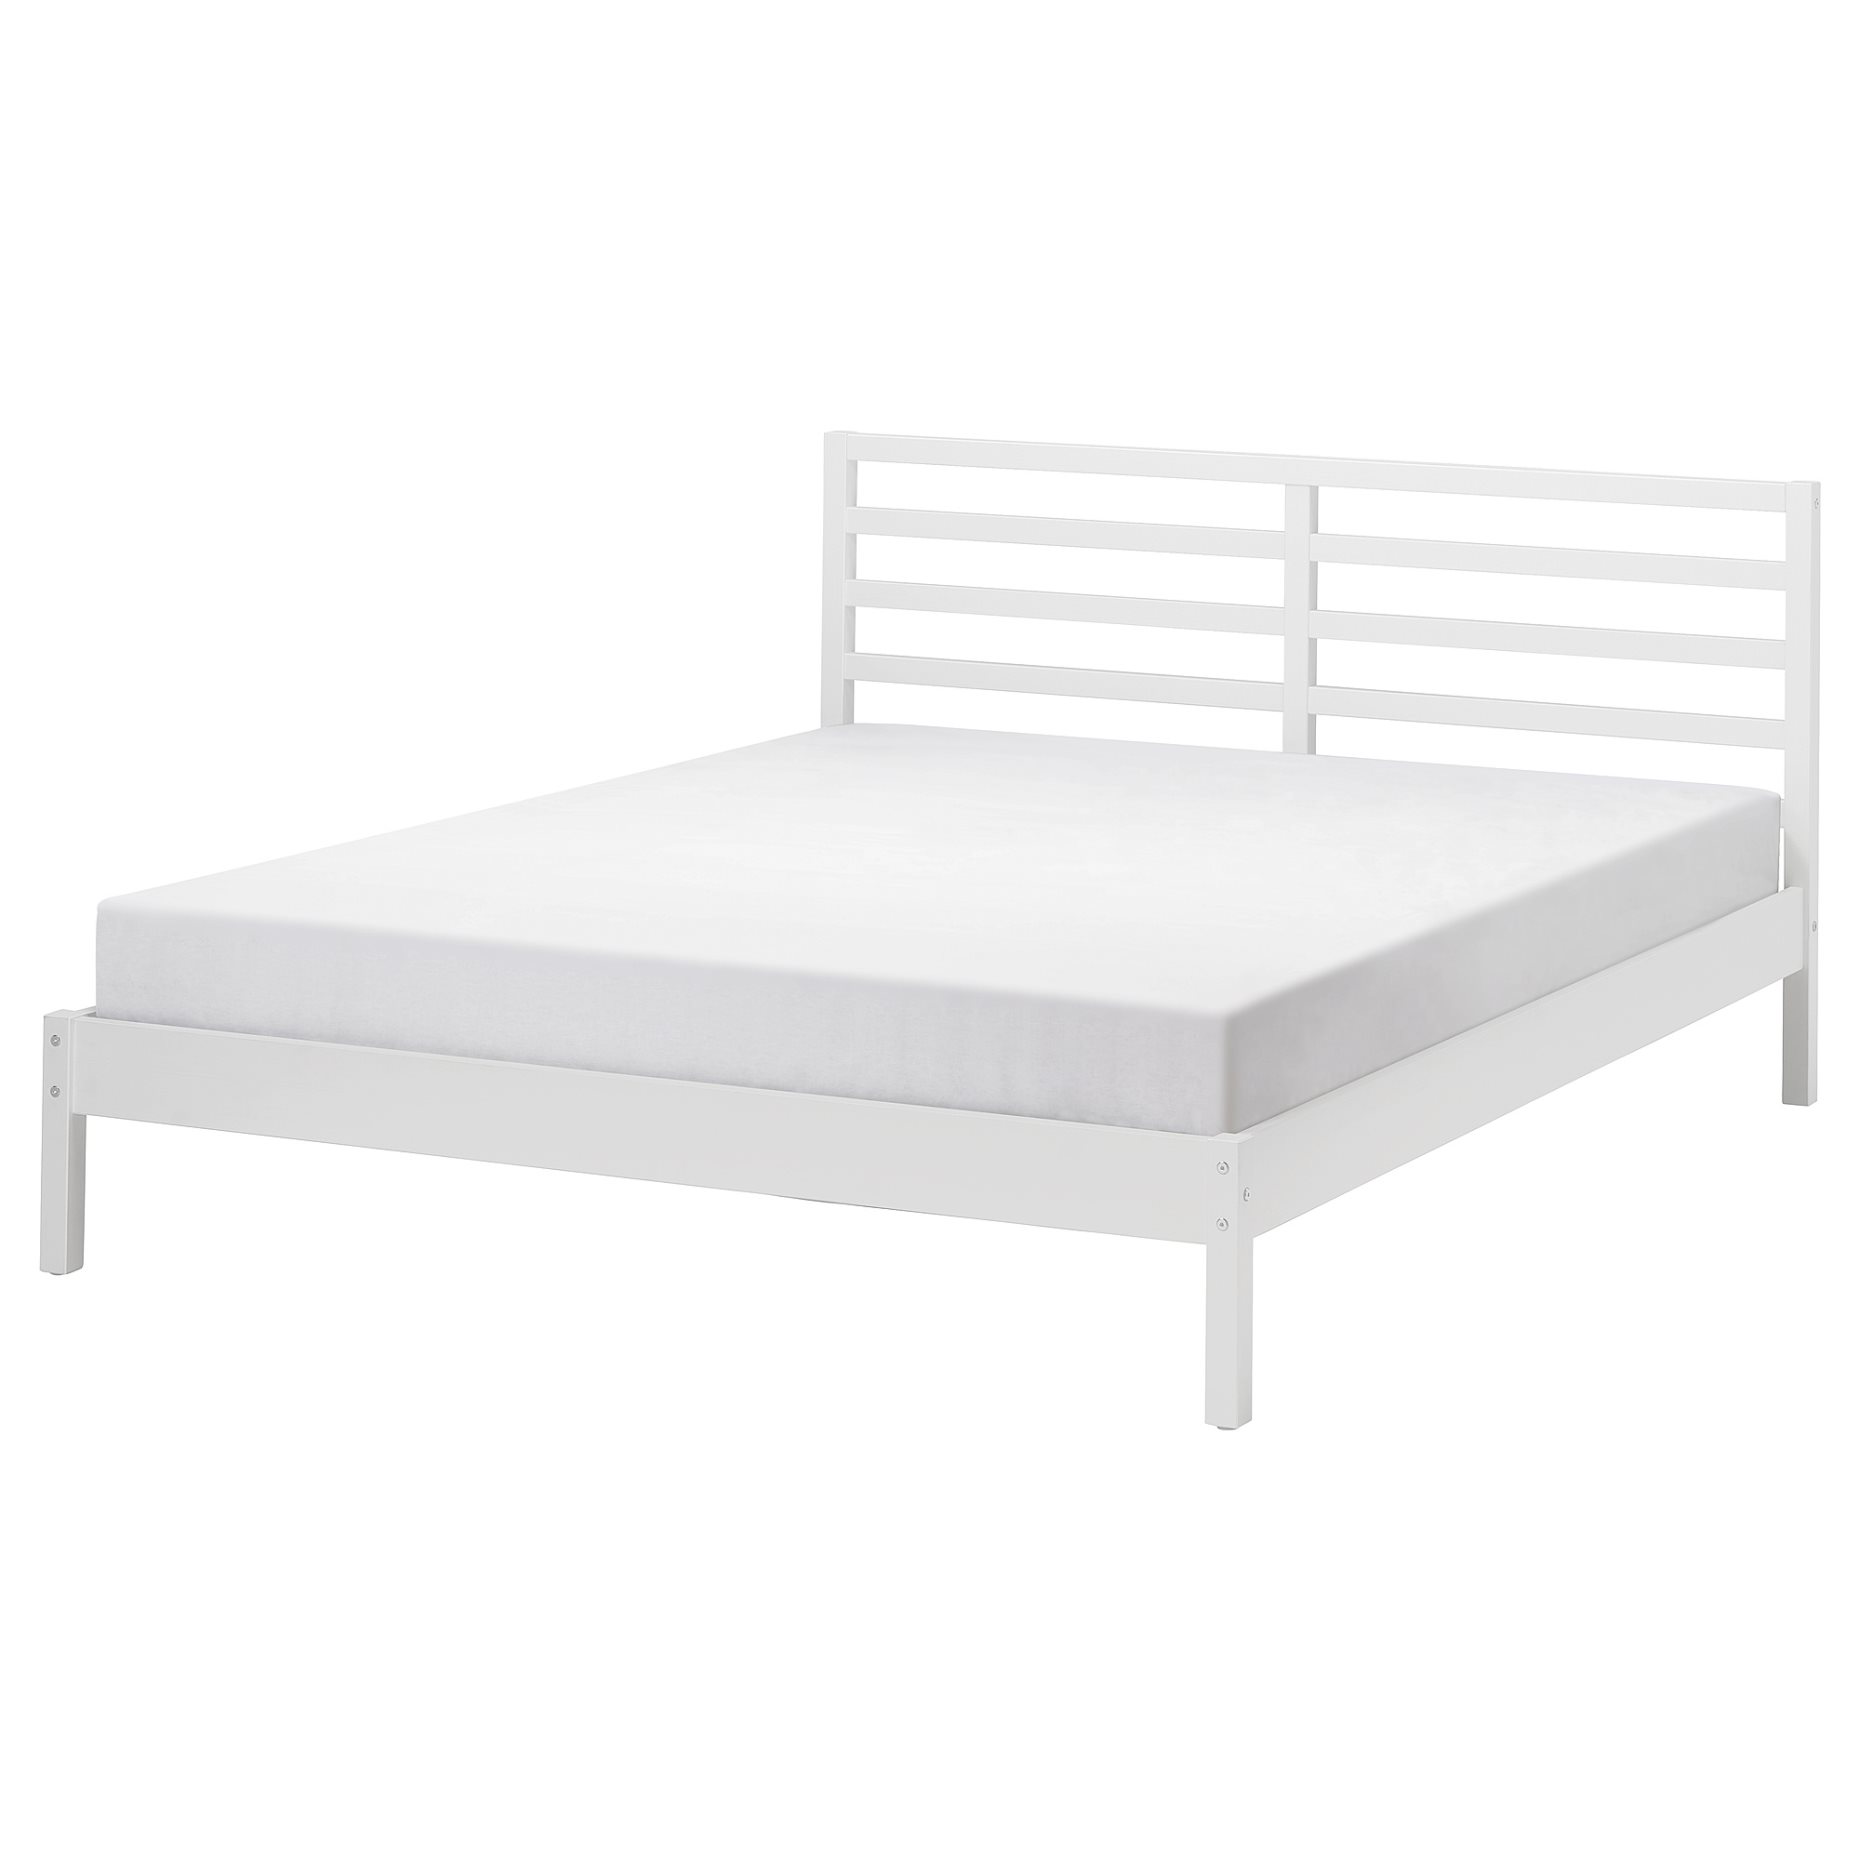 TARVA, bed frame, 140x200 cm, 795.539.36